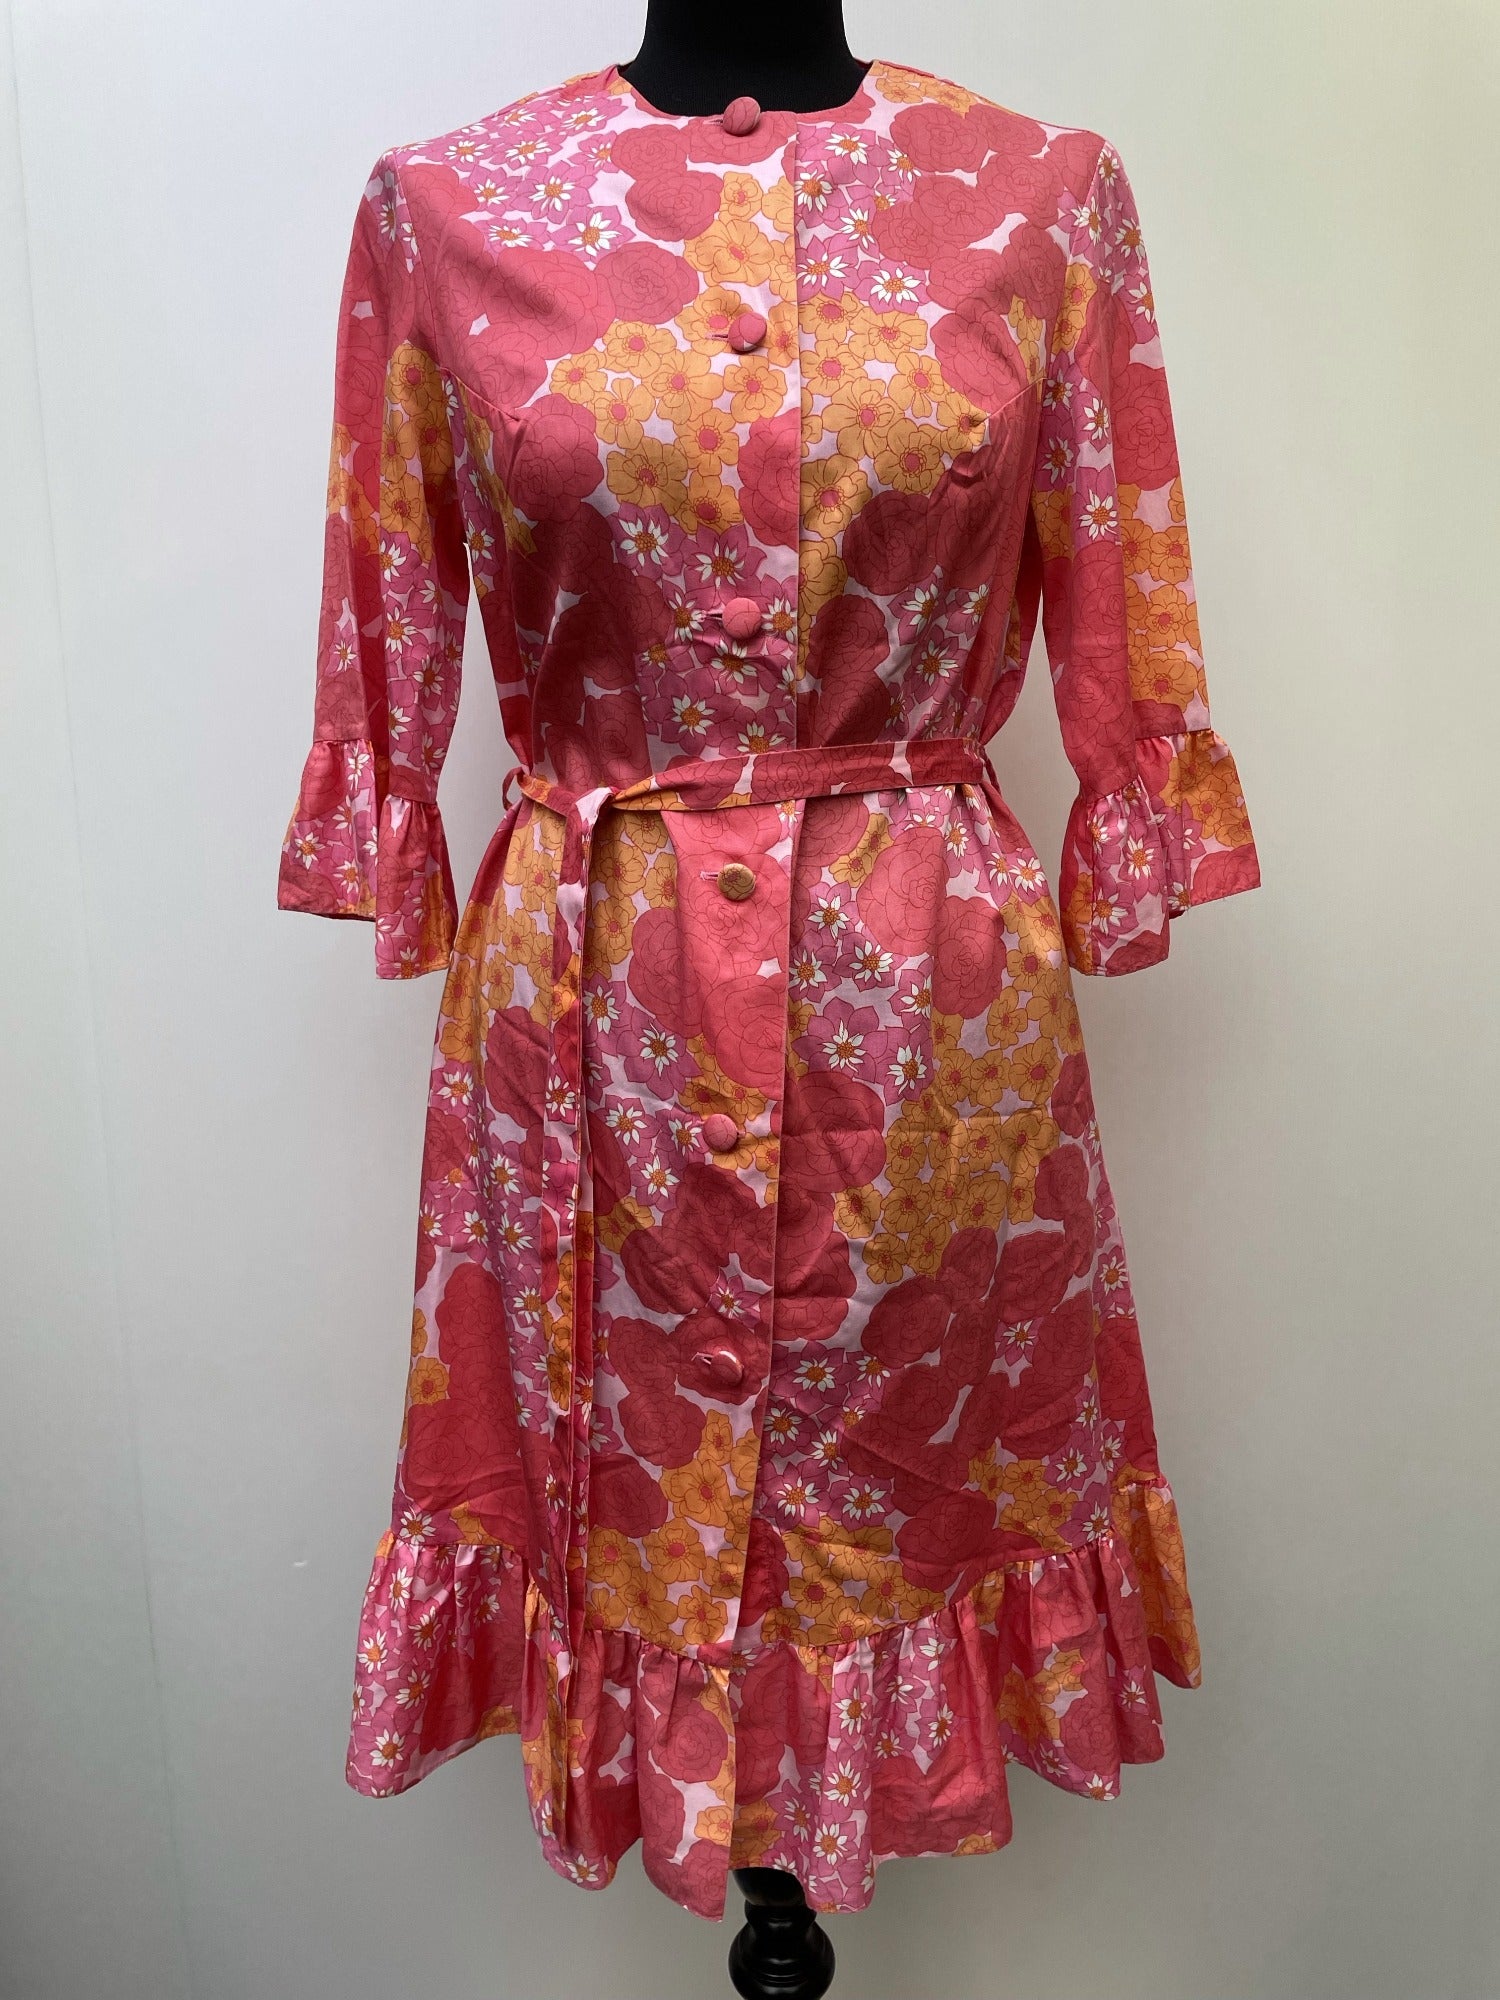 1960s Floral Midi Belted Dress - Size 12 - Urban Village Vintage ...